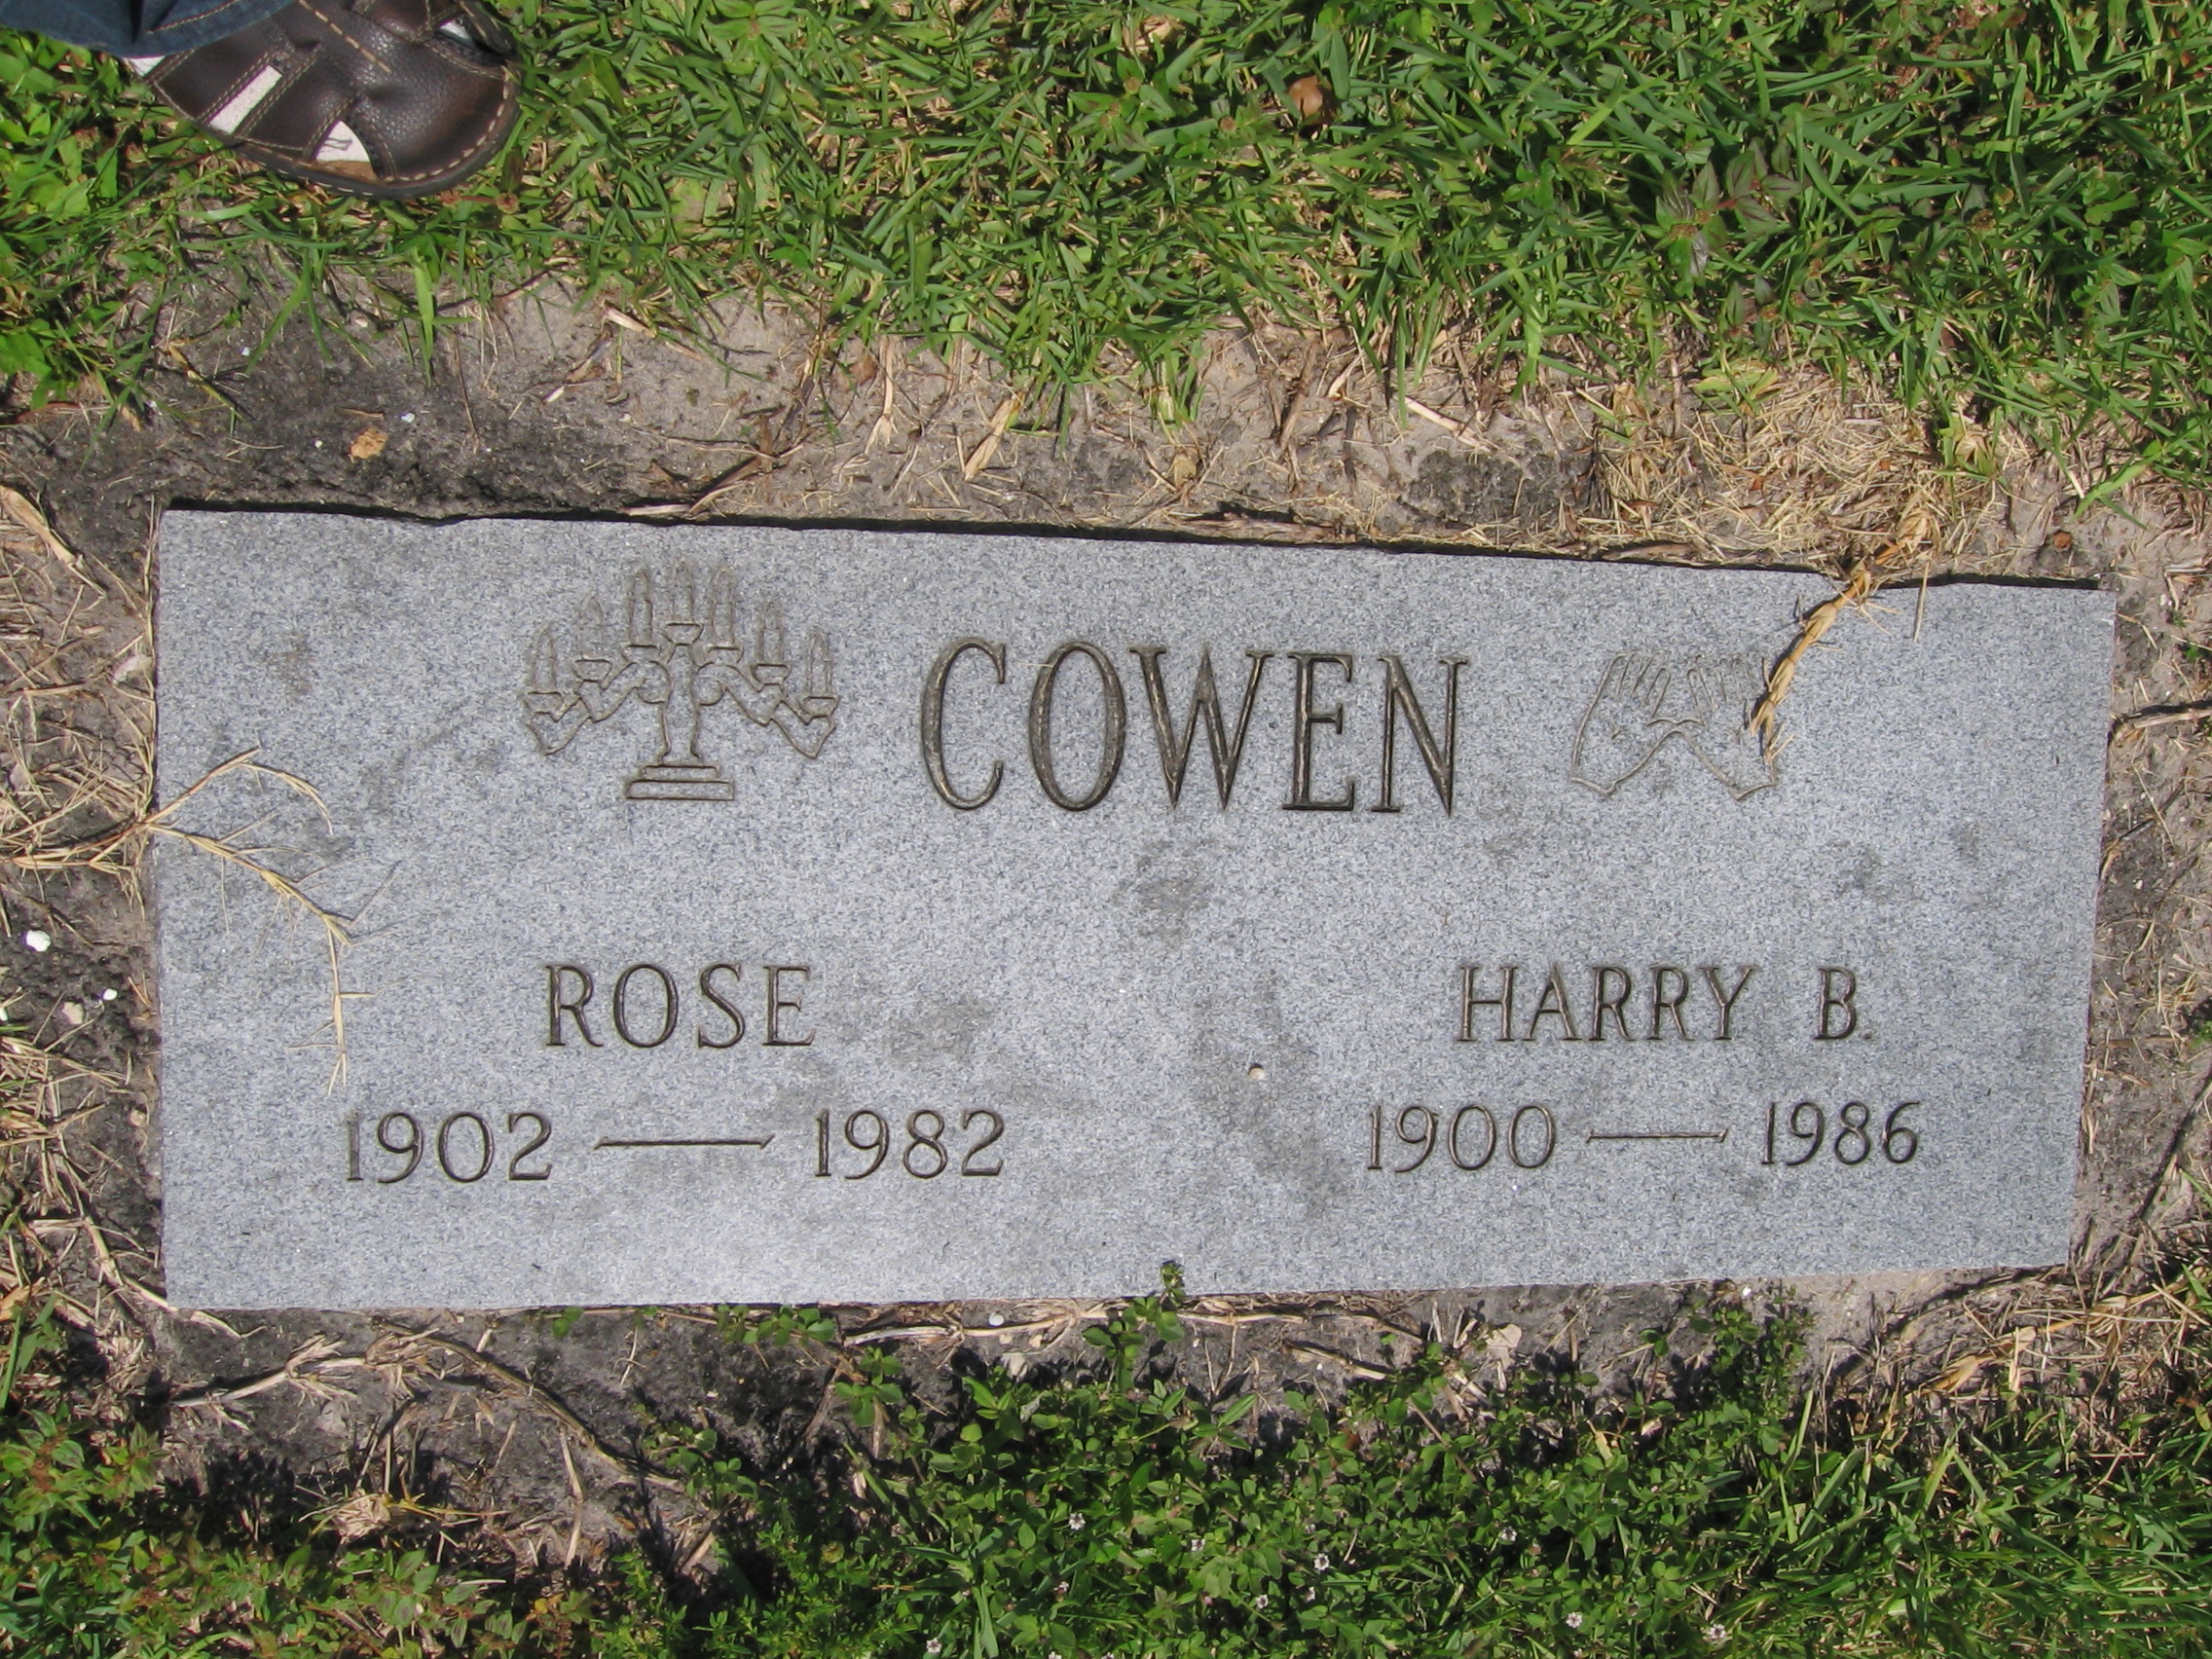 Harry B Cowen